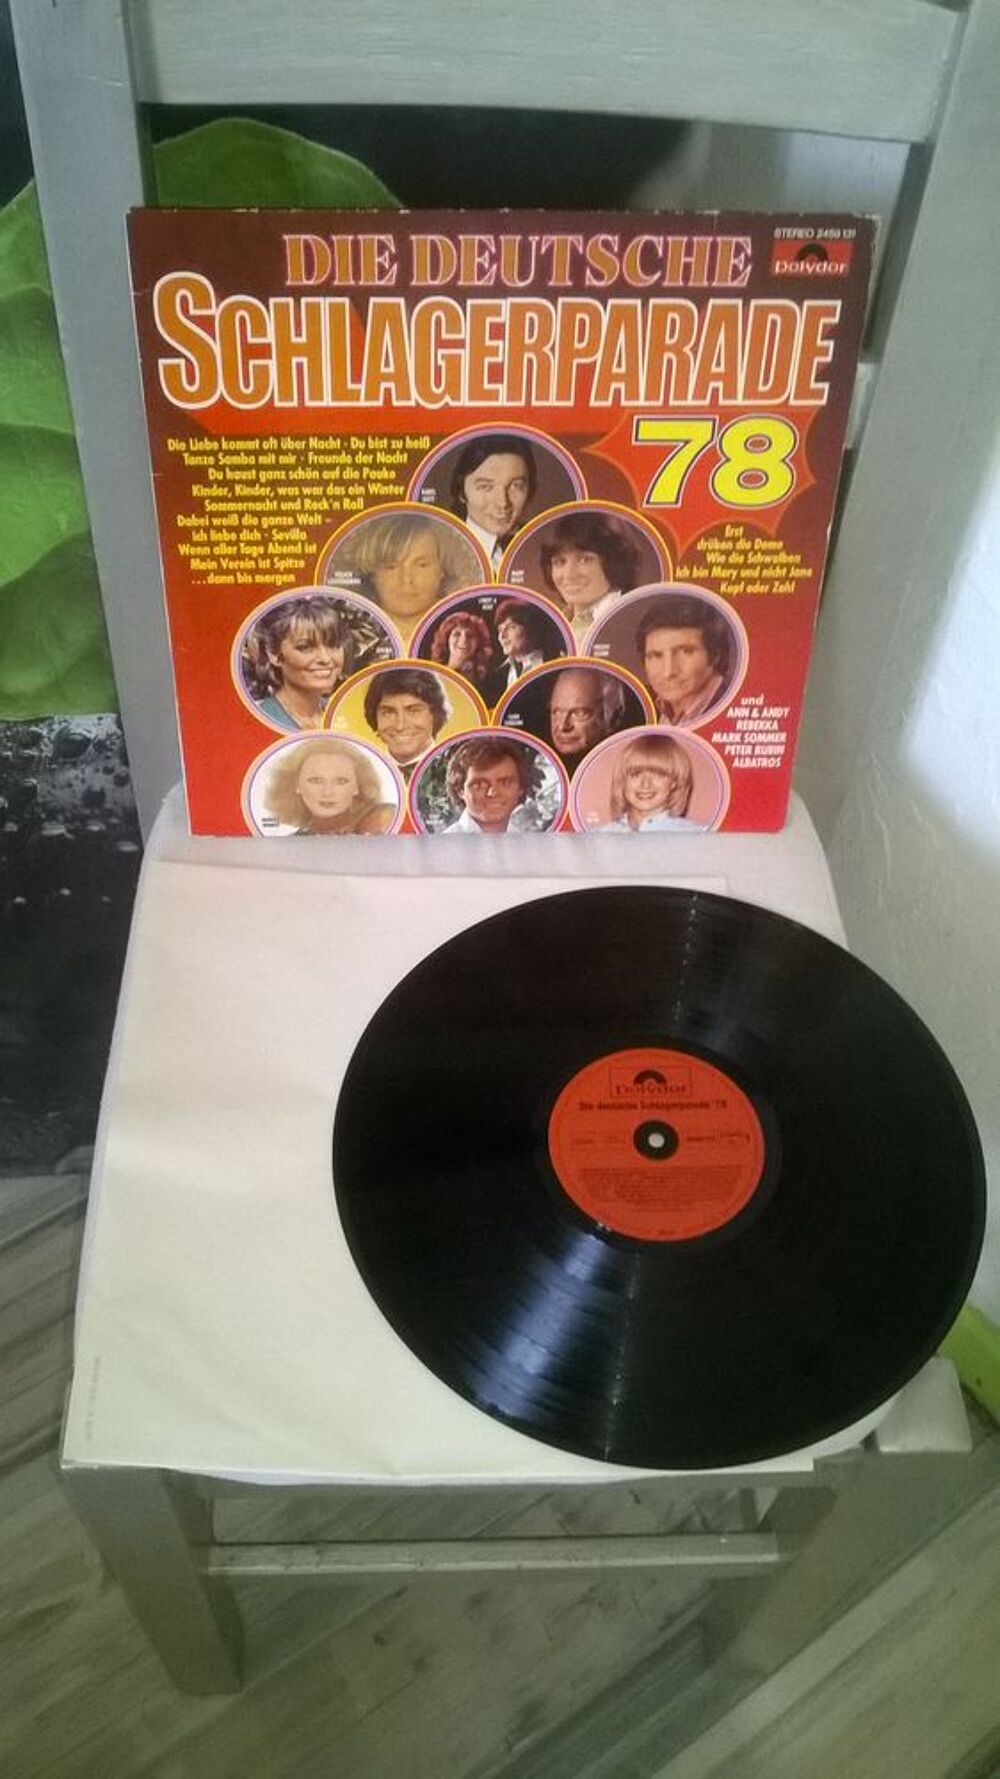 Vinyle Die Deutsche Schlagerparade '78
1978
Excellent etat CD et vinyles